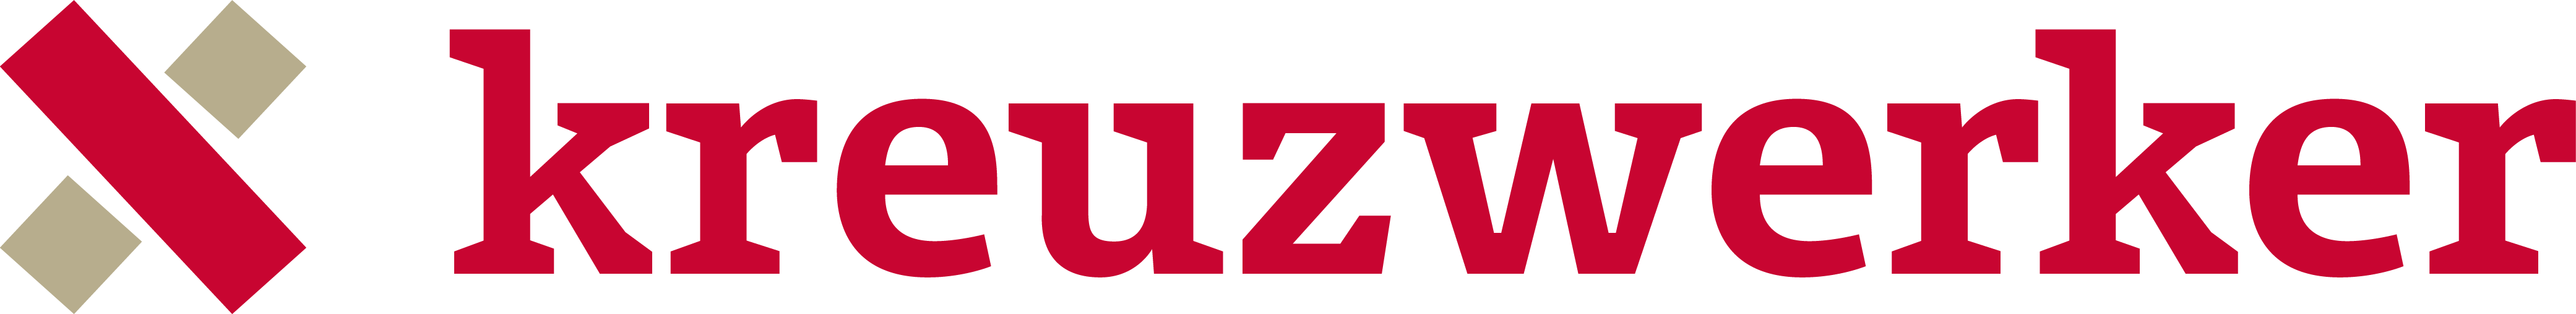 Логотип kreuzwerker